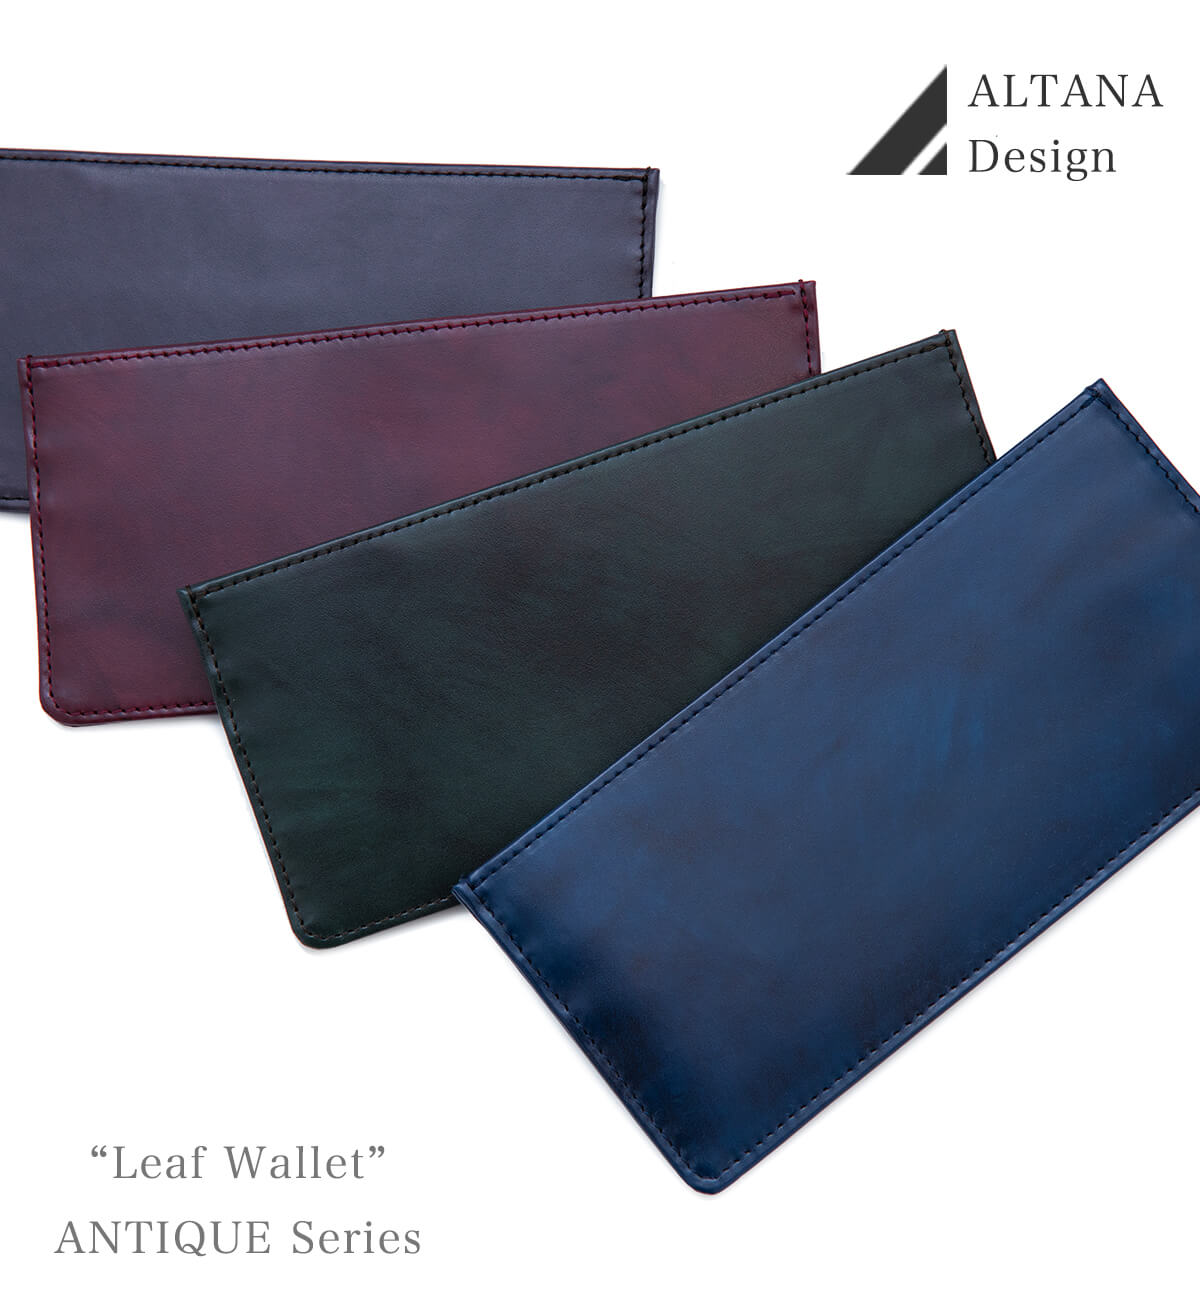 リーフウォレットRZ/極薄型財布【5月13日出荷分】 | オルタナデザイン 